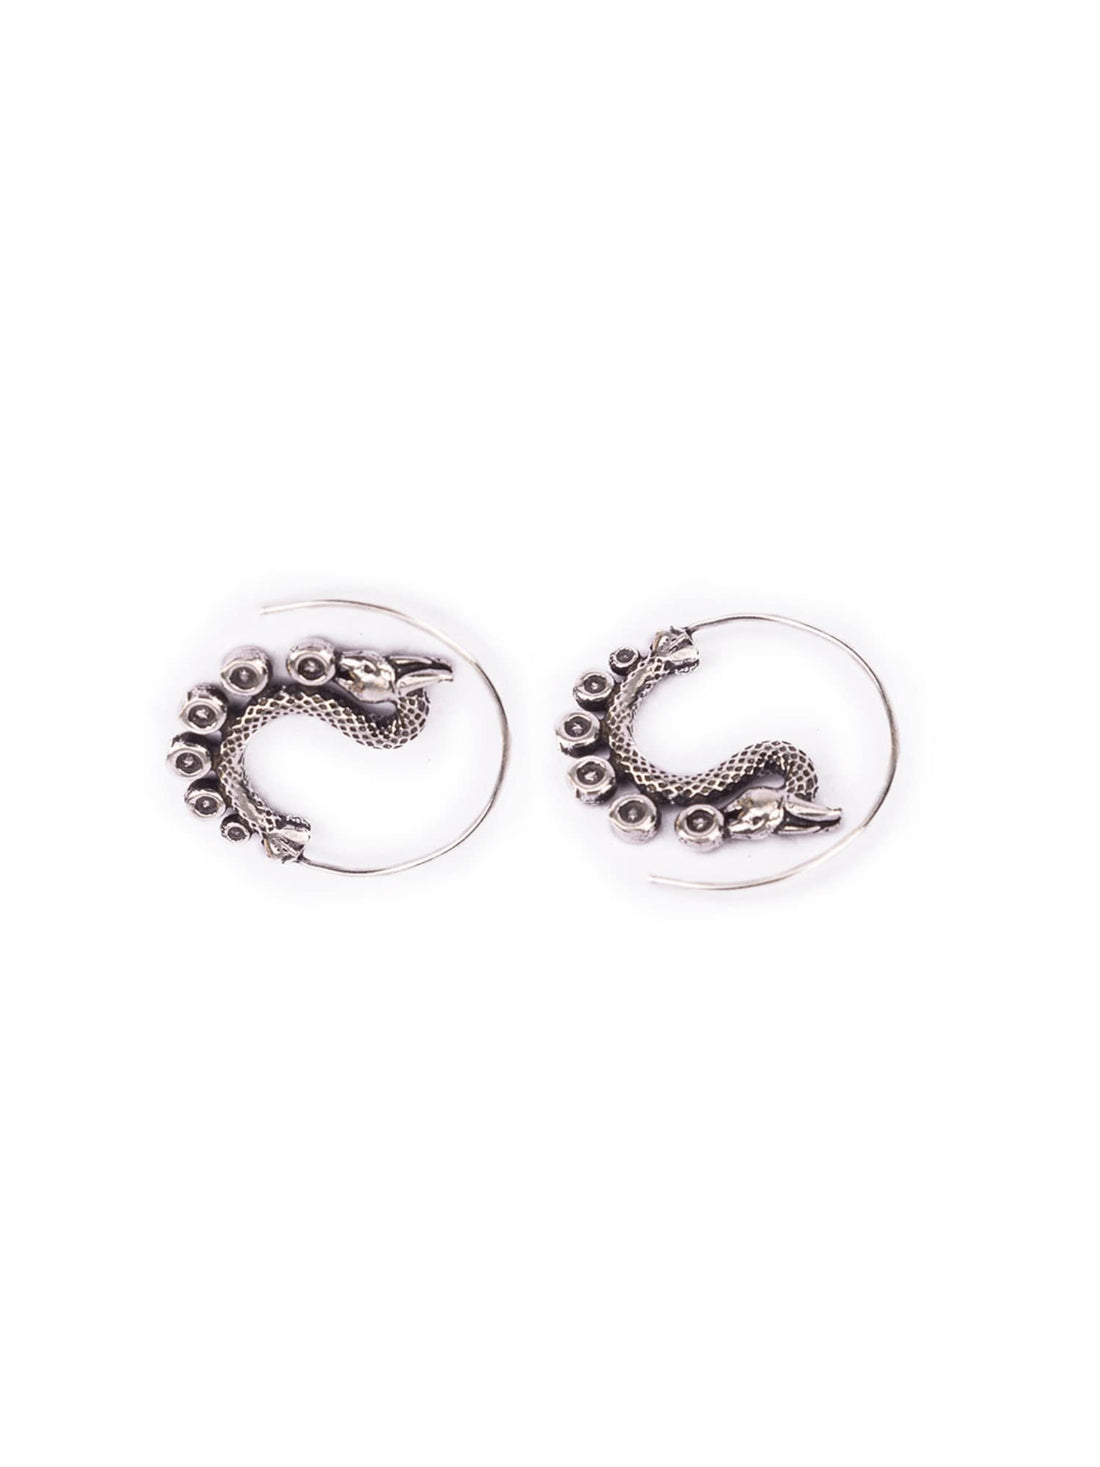 Daily Wear Hoops Earrings - Mystic Dragon Silver-Plated Brass Earrings By Studio One Love